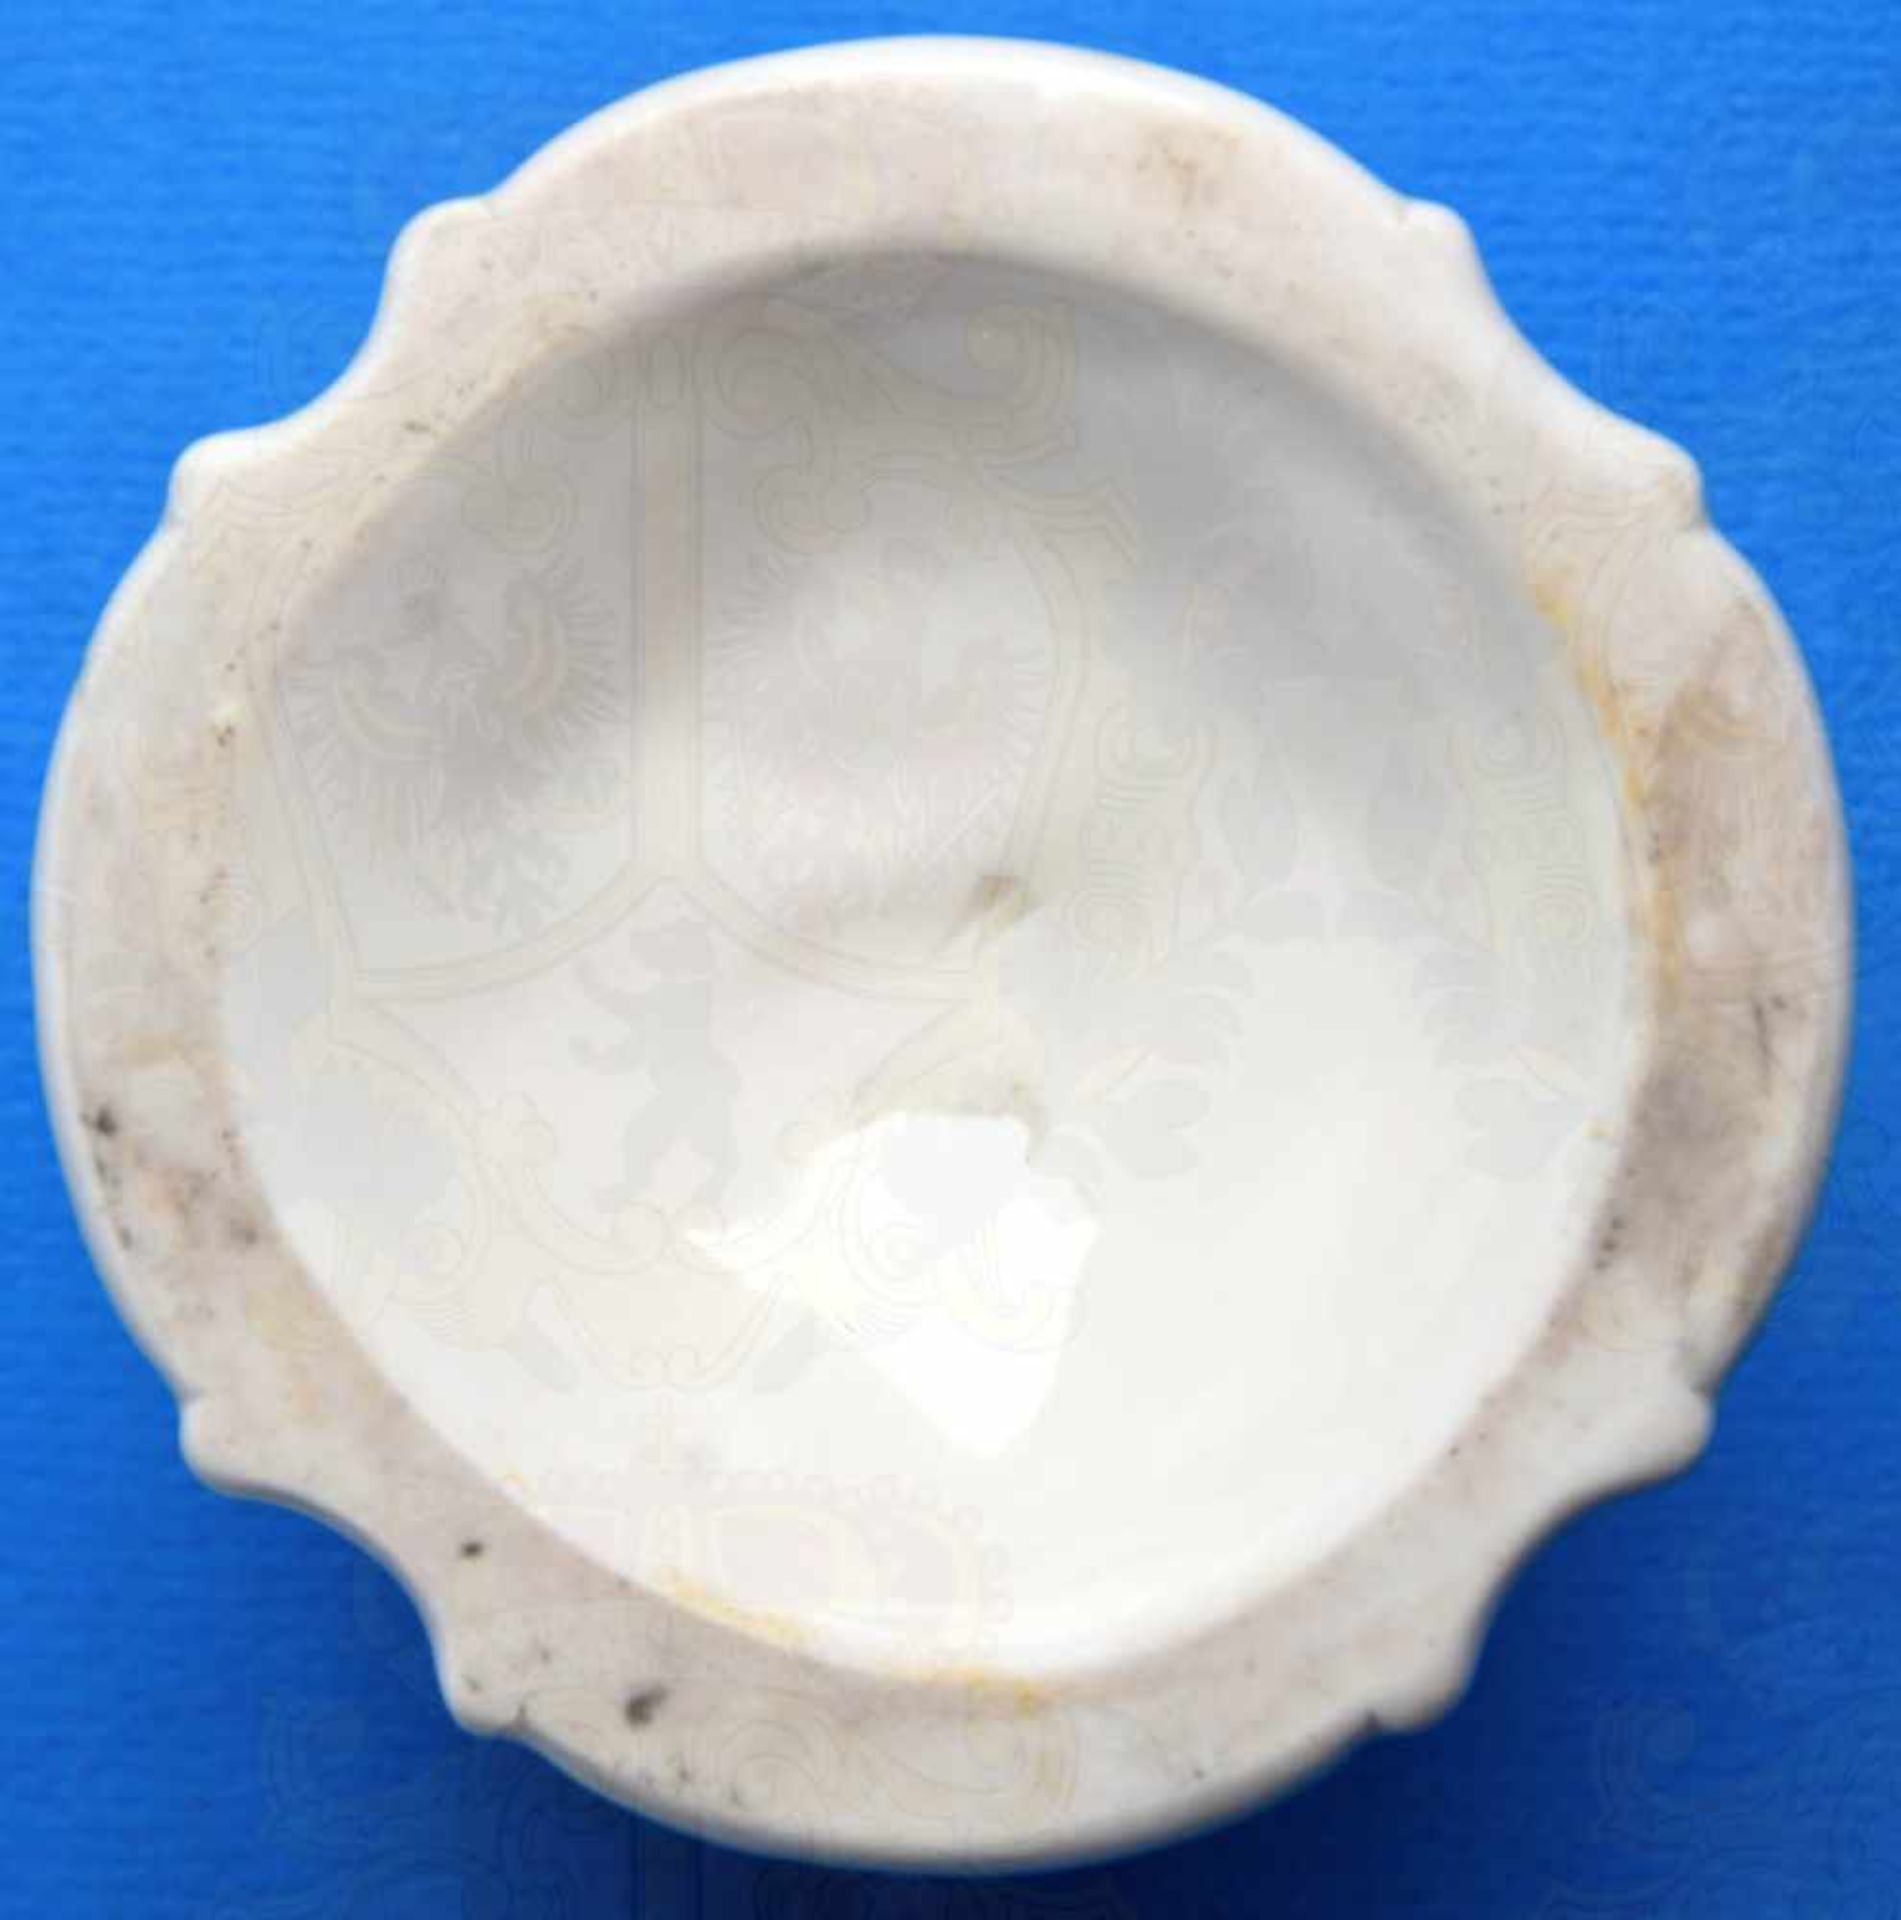 ALLACH BAROCKER LEUCHTER, 1 kerzig, weißes Porzellan, glasiert, im Boden, „Allach“ und Rune, - Image 3 of 3